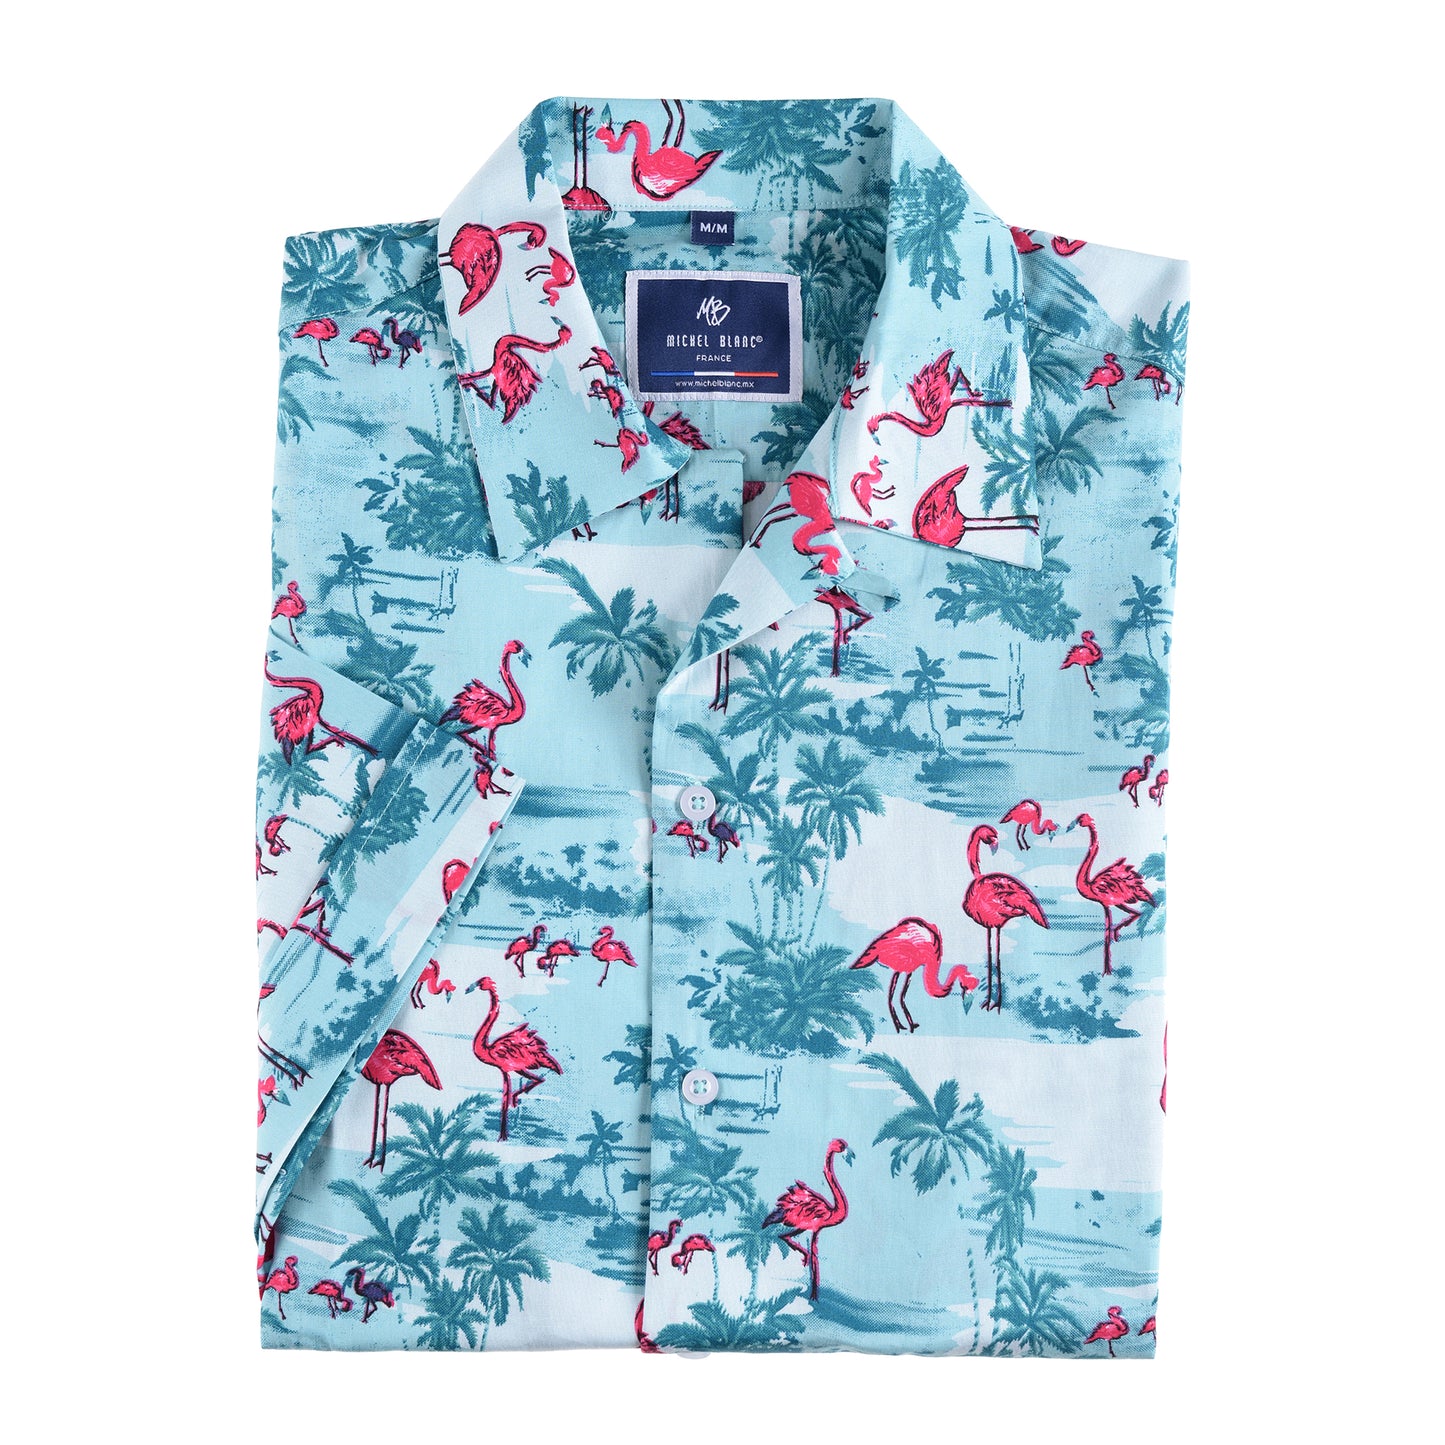 Camisa manga corta con estampado en flamingos